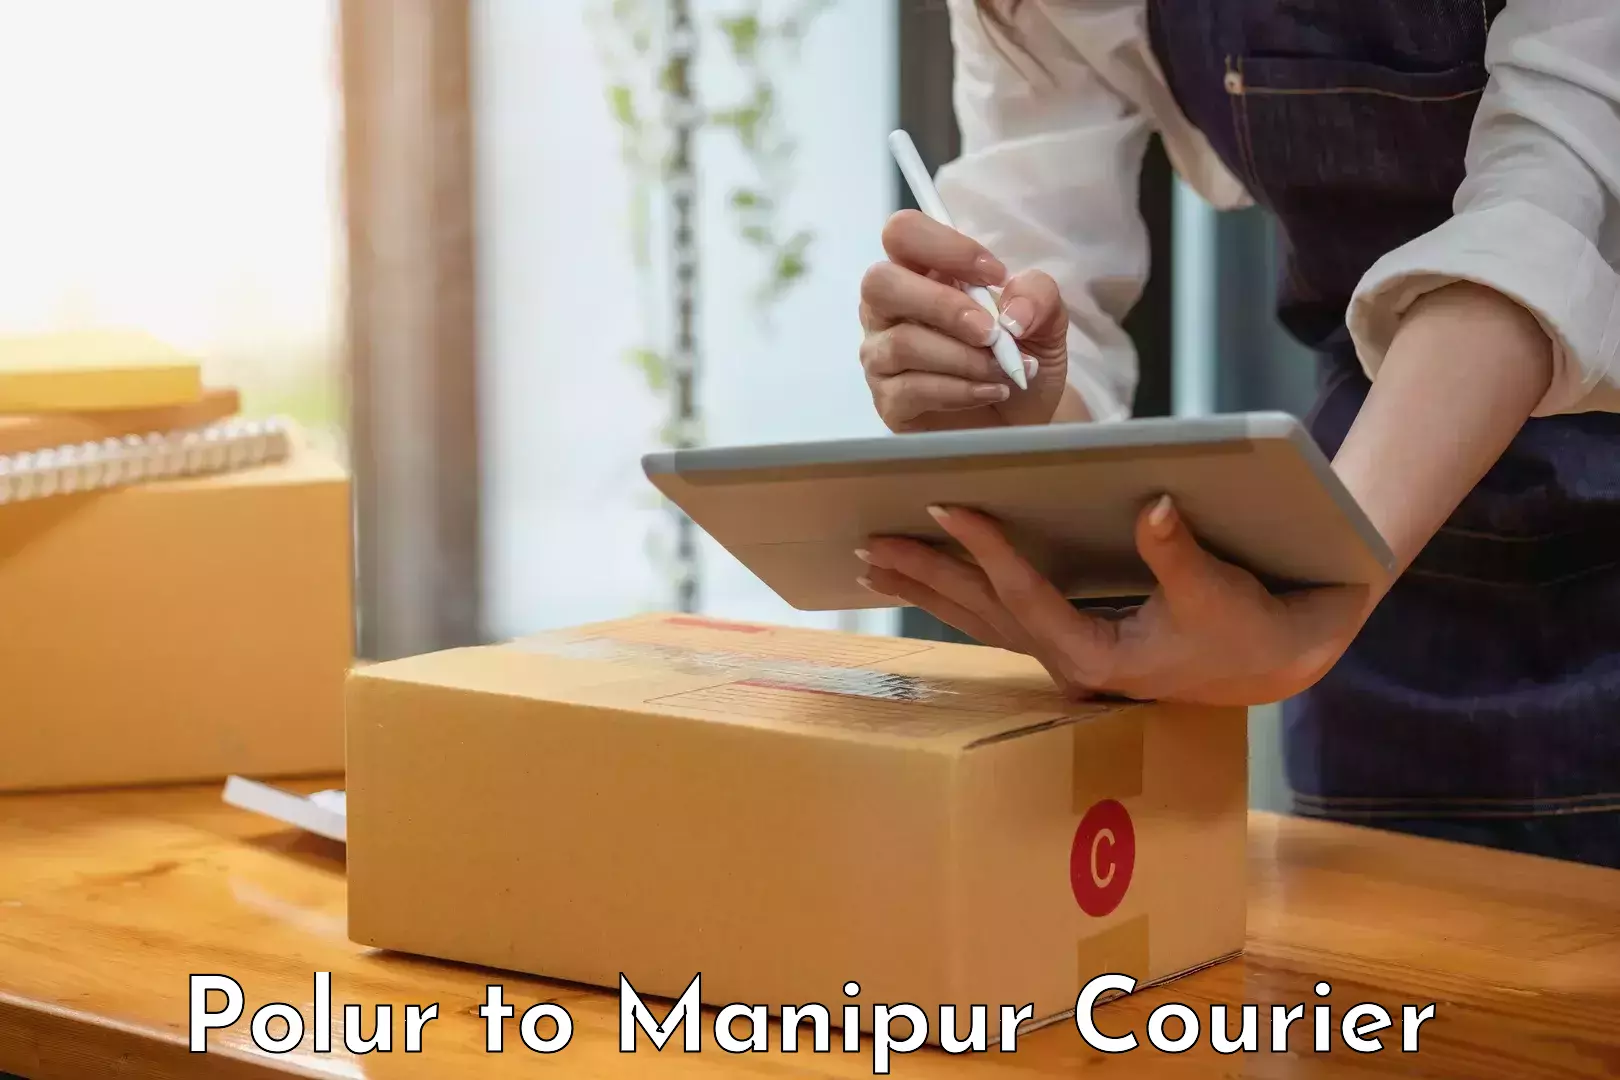 Courier service booking Polur to Moirang